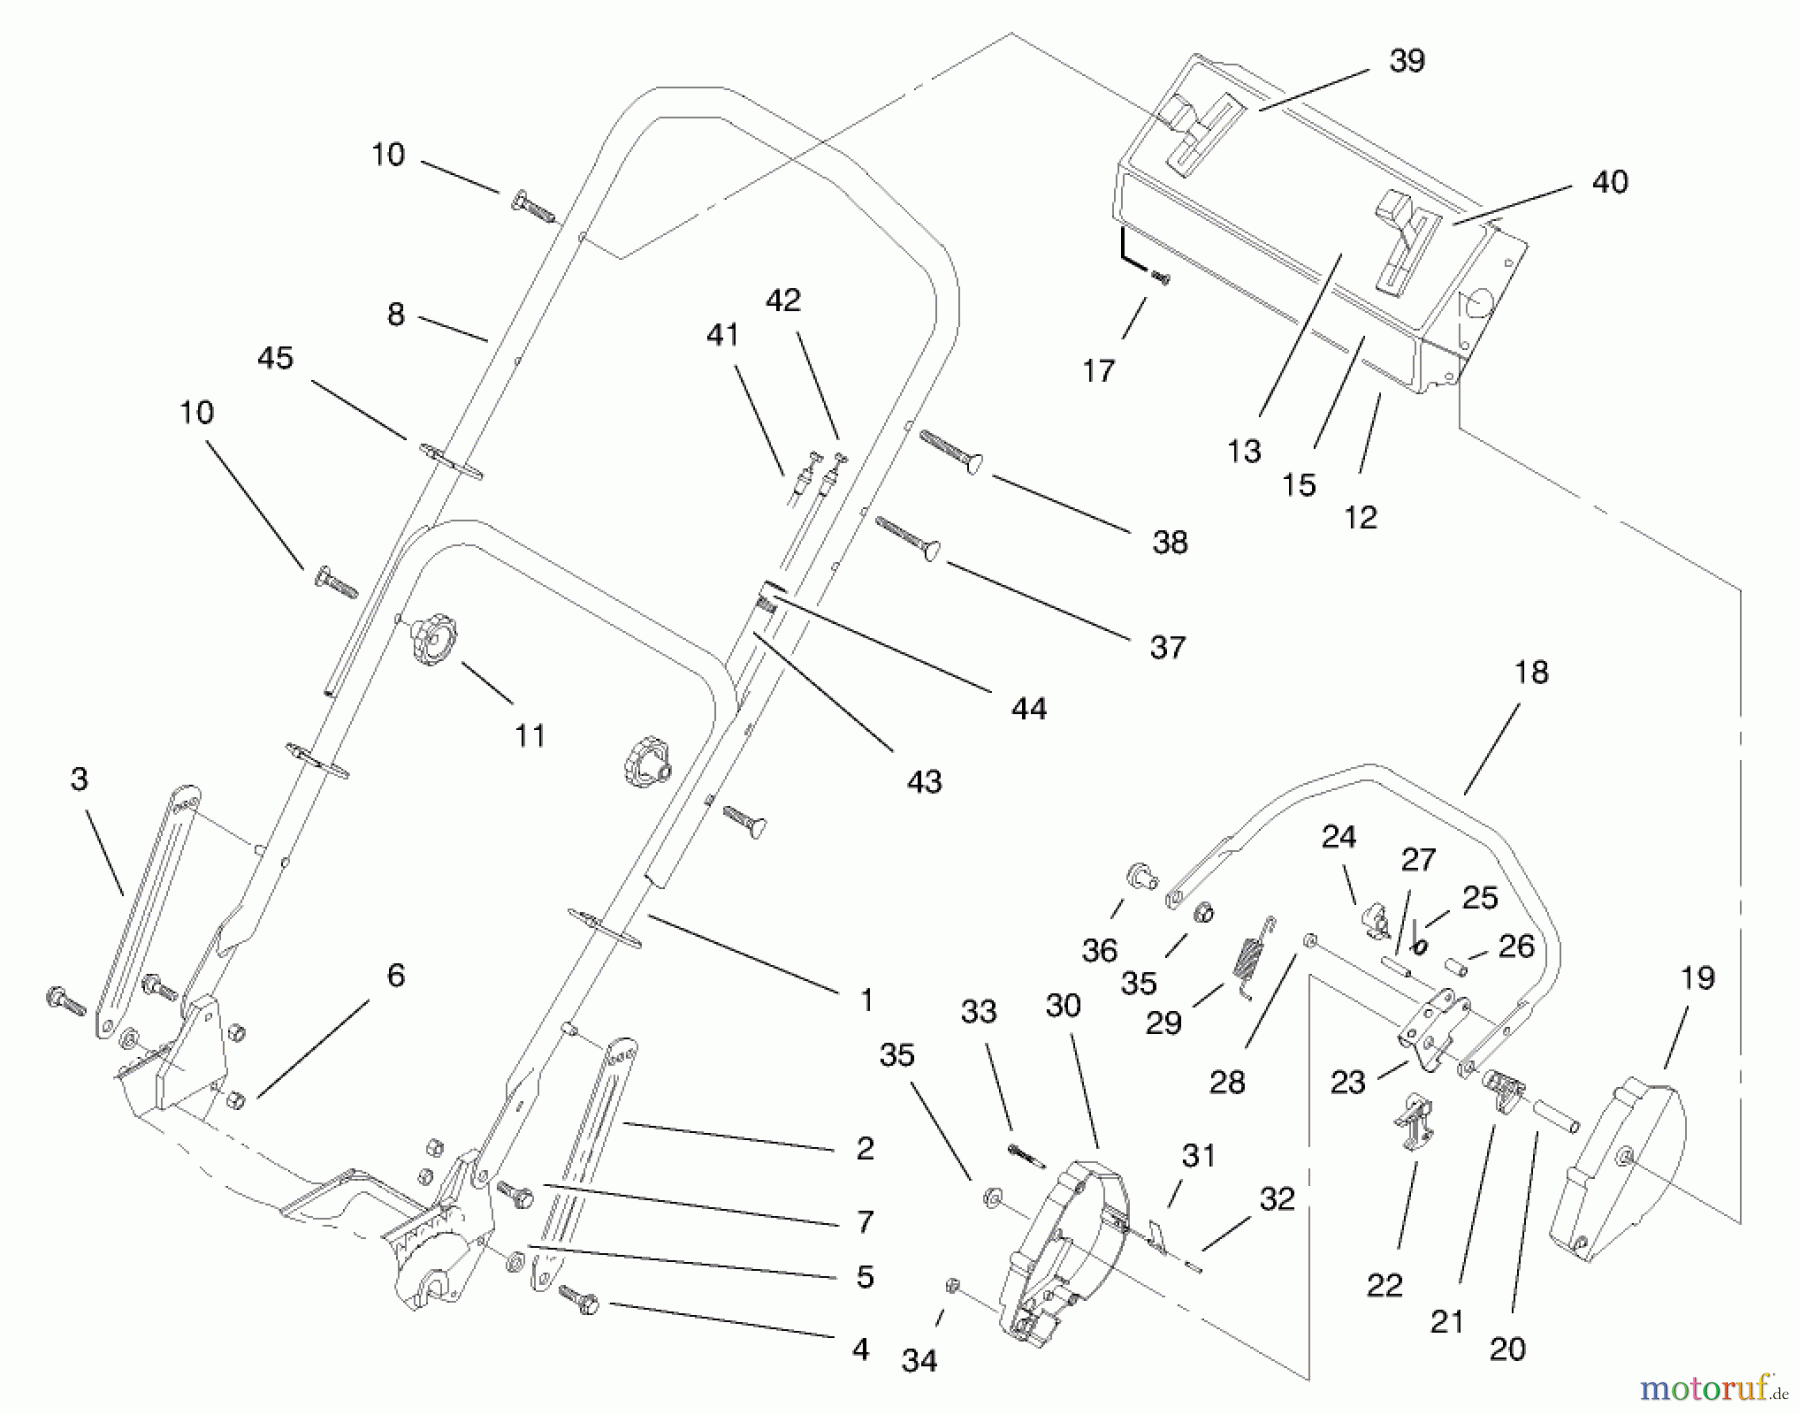  Toro Neu Mowers, Walk-Behind Seite 1 20465 - Toro Super Recycler Mower, 1997 (790000001-799999999) HANDLE ASSEMBLY